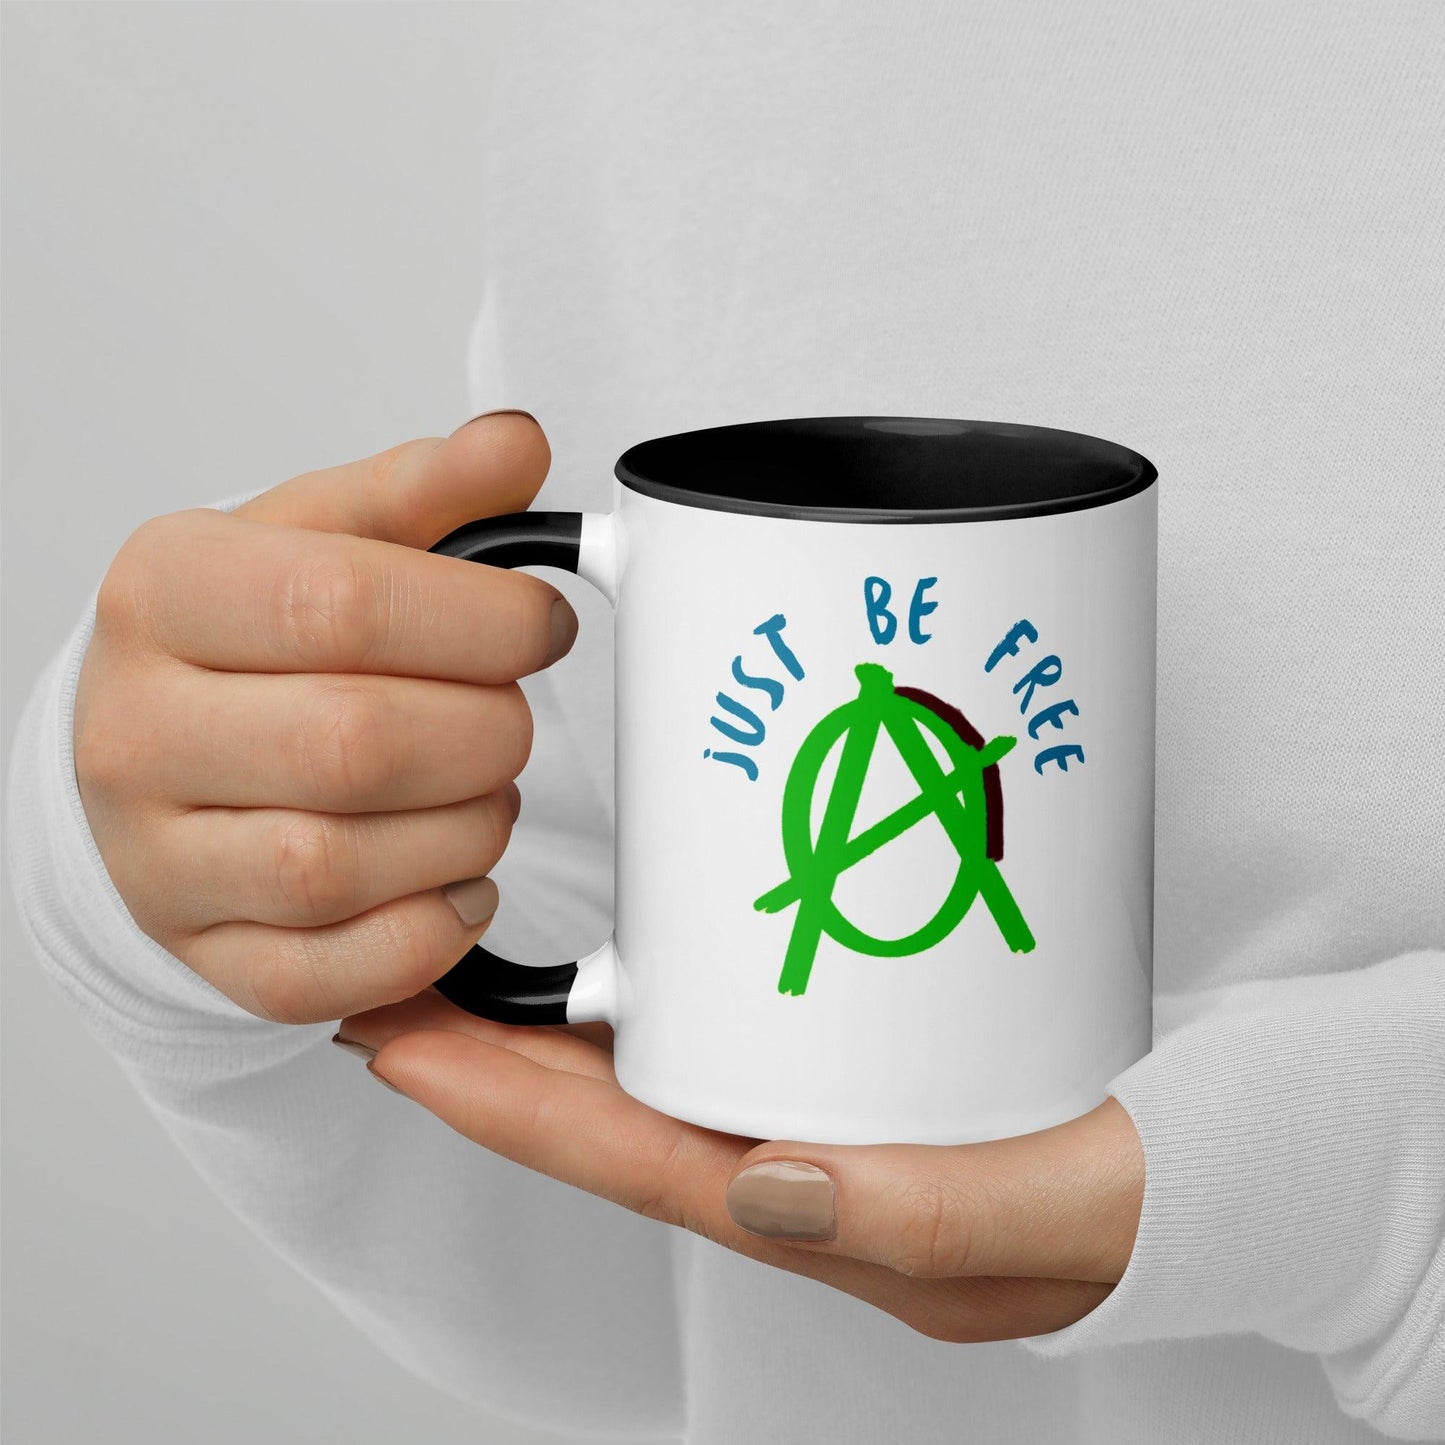 Green "Just Be Free" Anarchy Mug - AnarchyWear